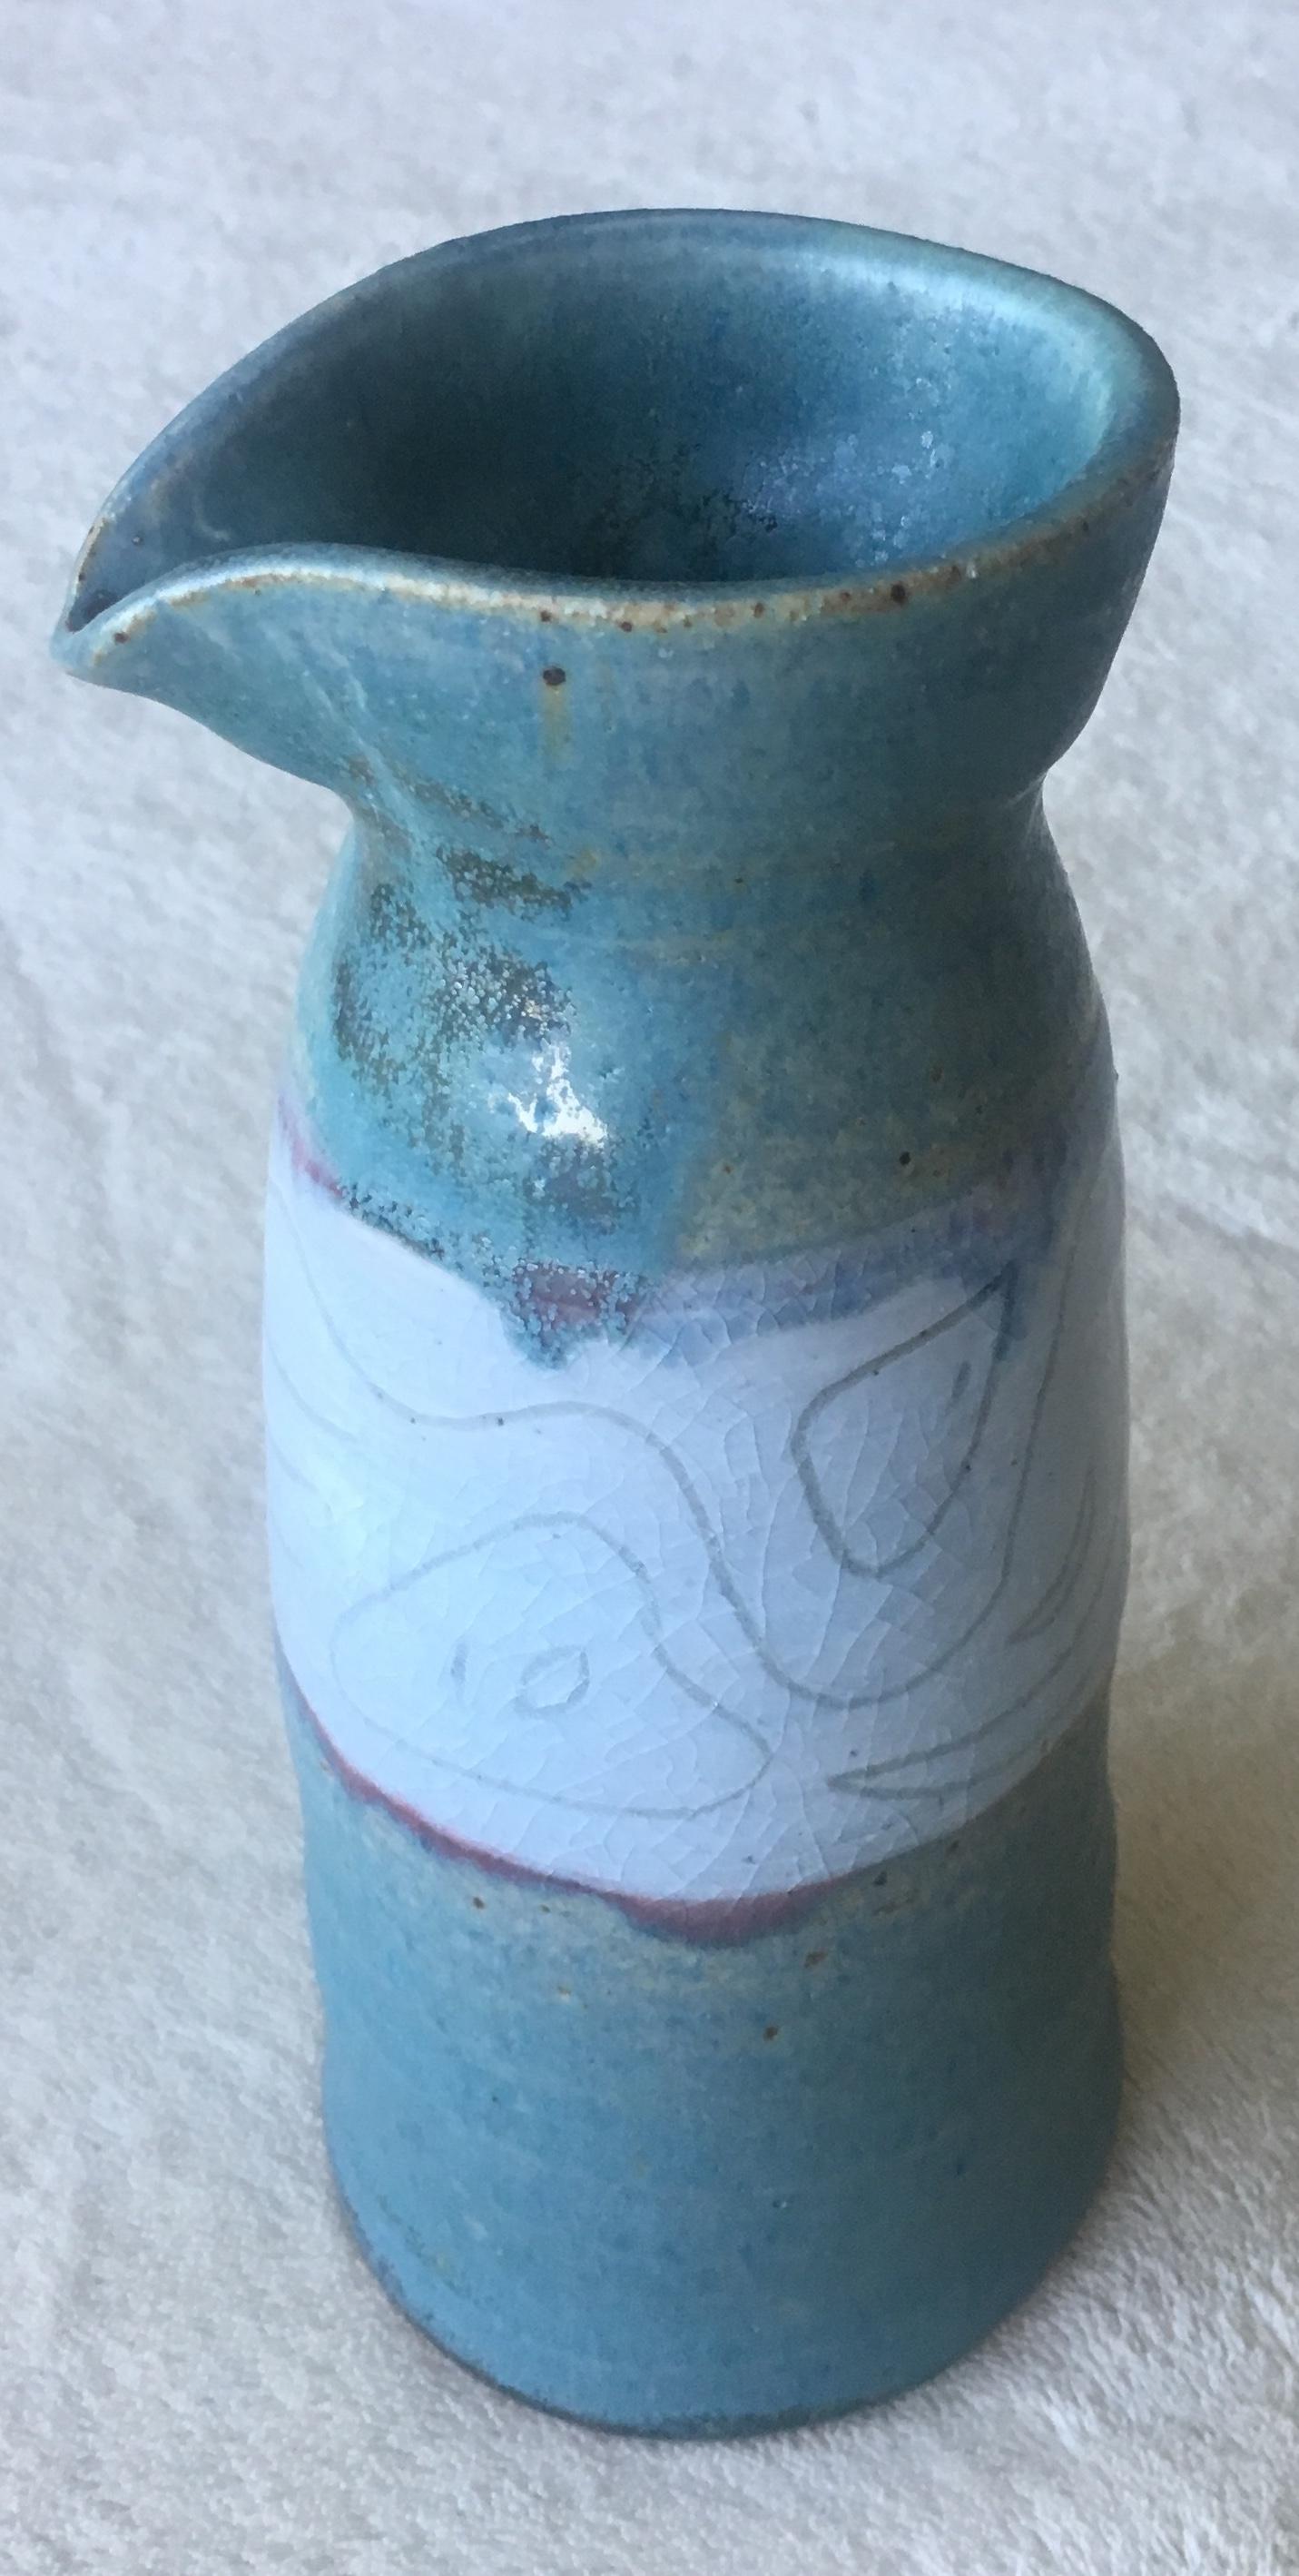 Schöne glasierte dekorierte, stilisierte und grafische Vase, die eine kontrastierende matt blaugrüne Unterglasur zeigt. 

Einzigartiges handgefertigtes Stück. 
Unterschrieben.